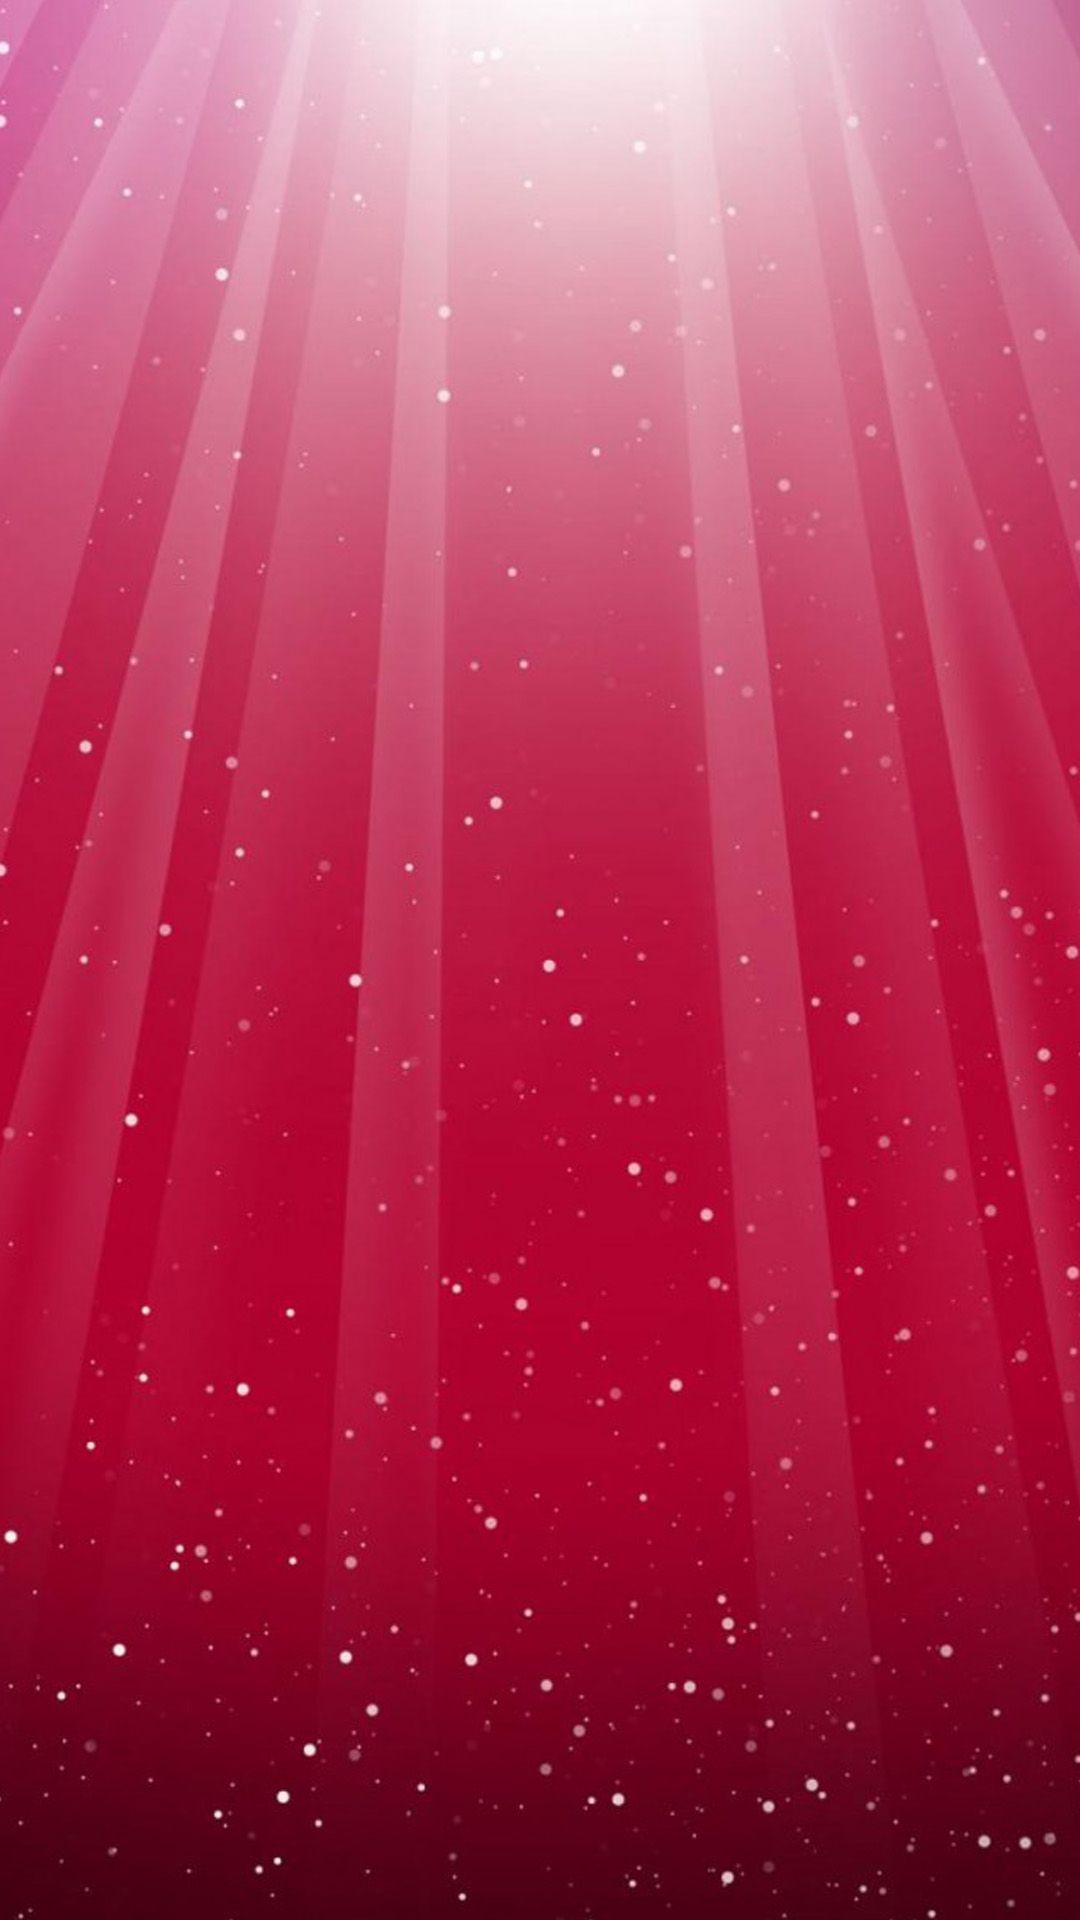 라이트 핑크 아이폰 배경 화면,빨간,분홍,빛,물,선